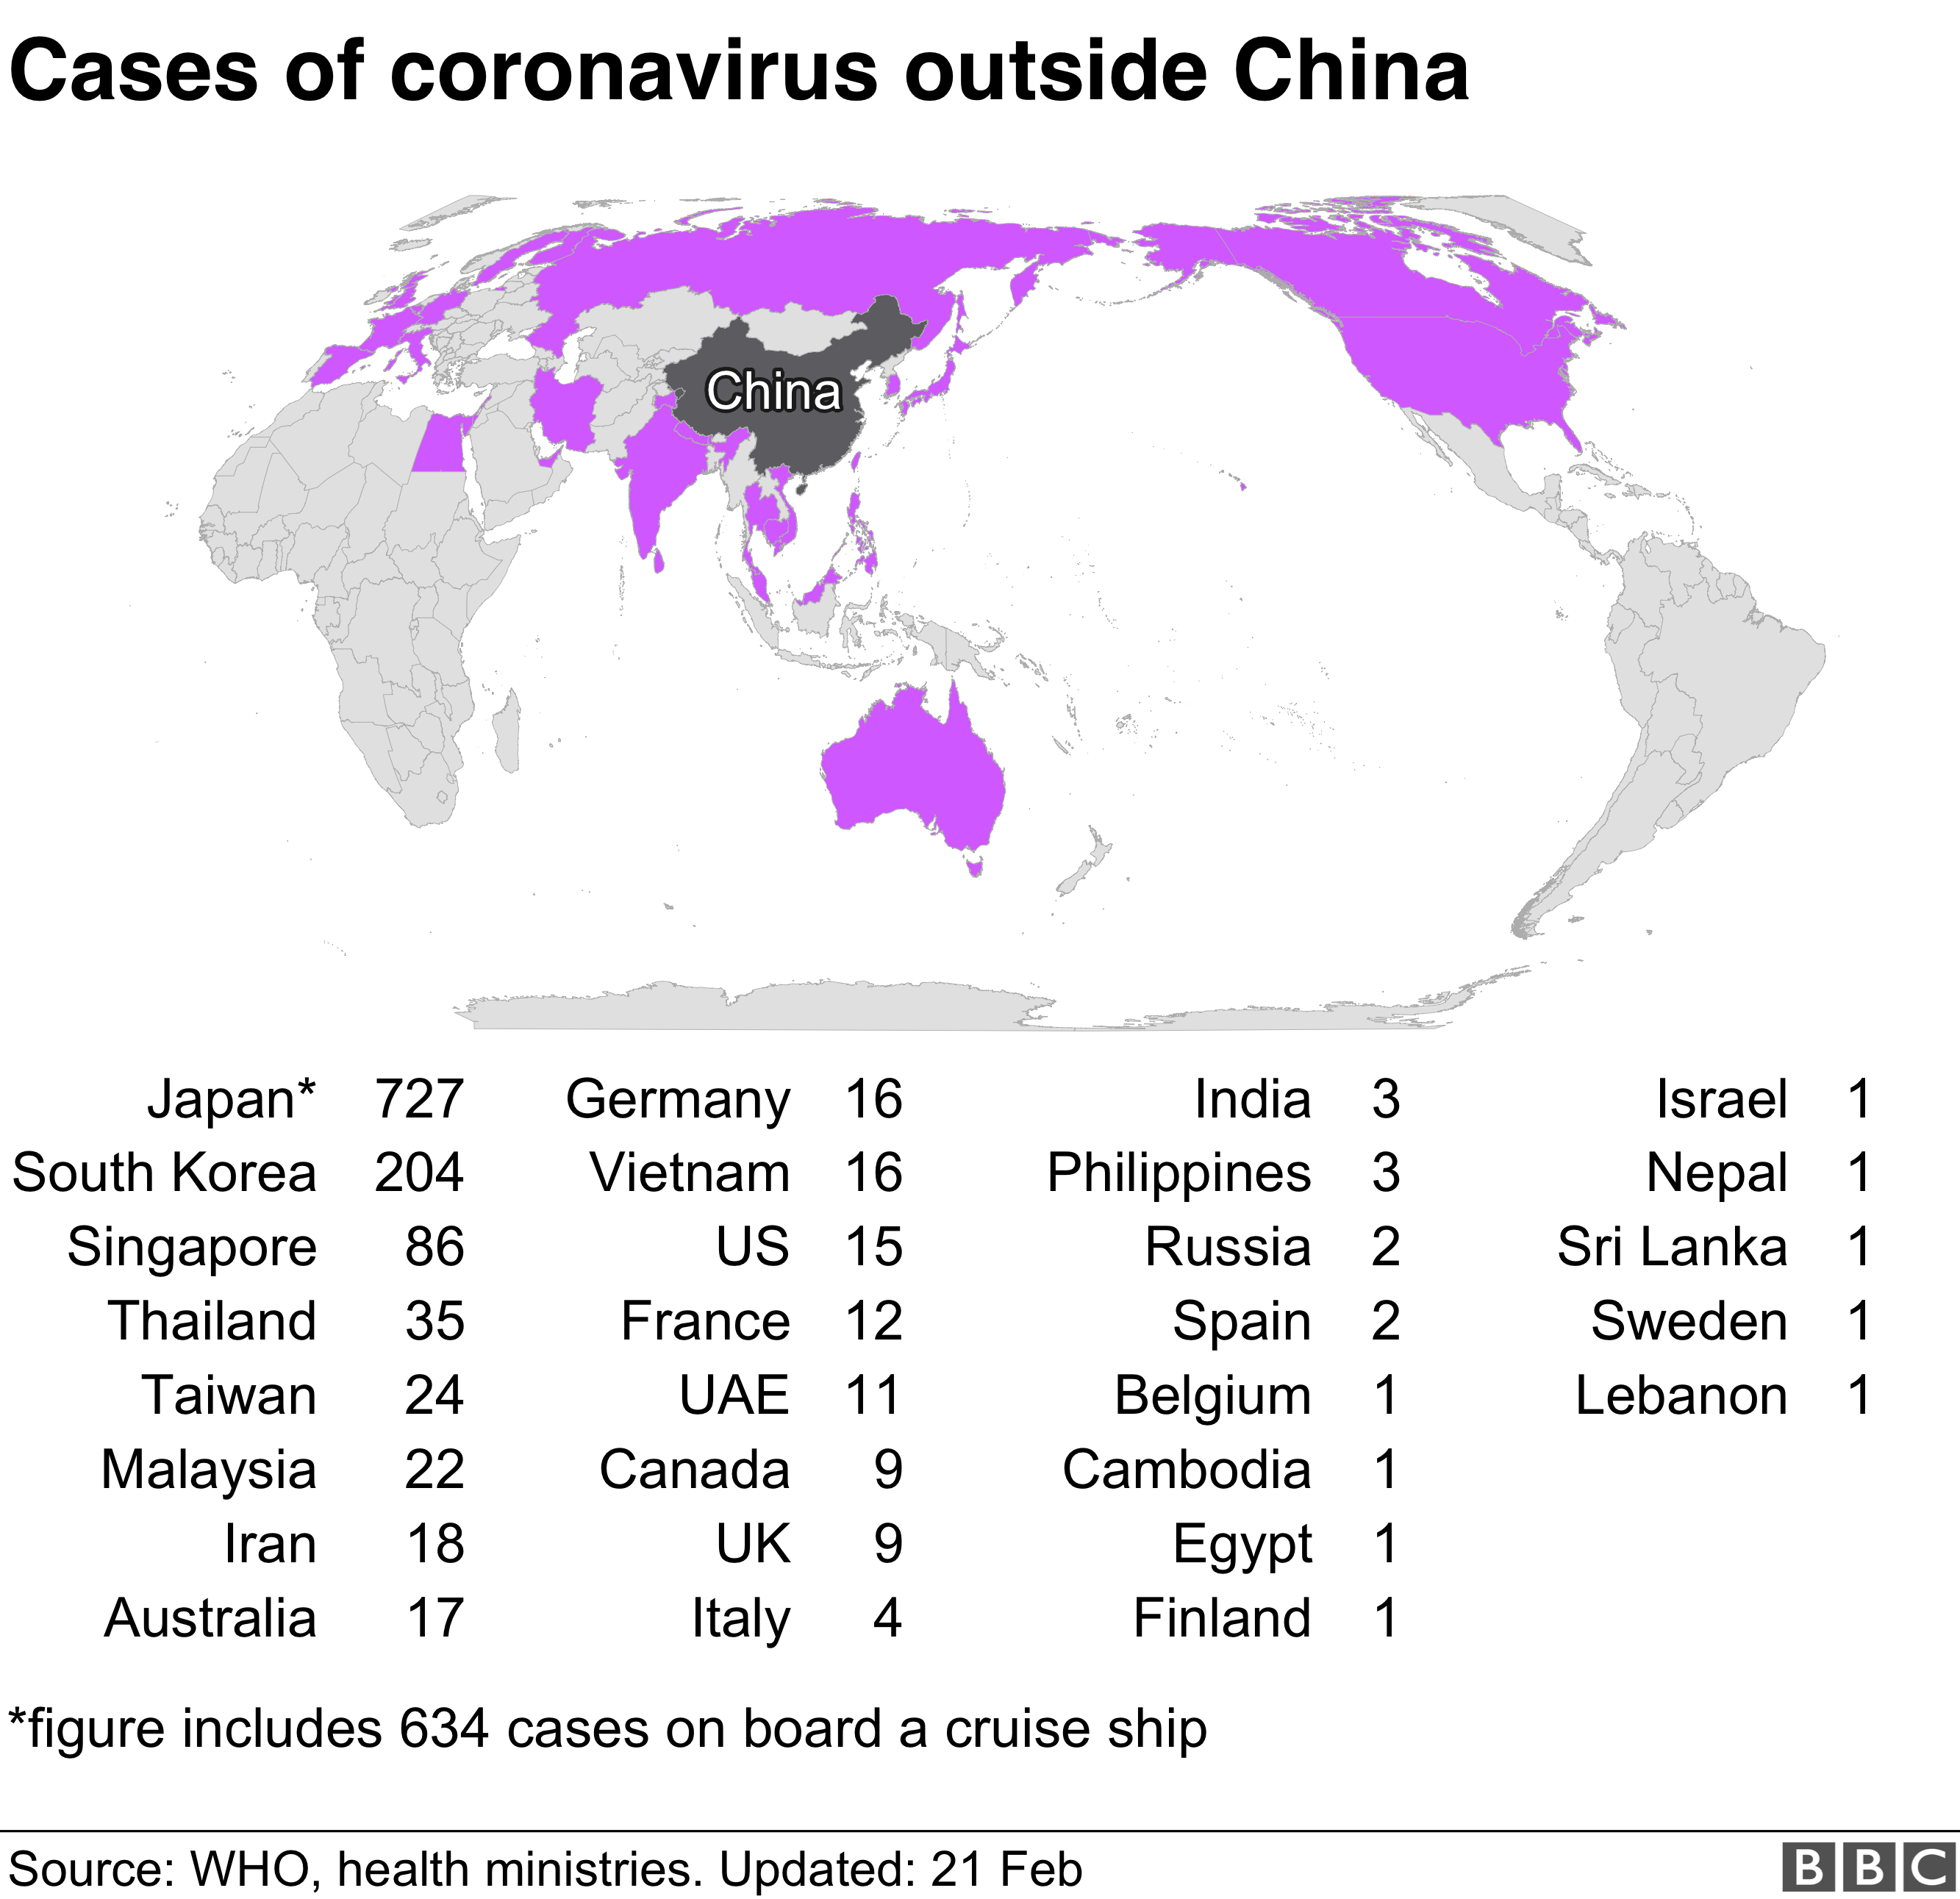 Coronavirus has spread to 29 countries